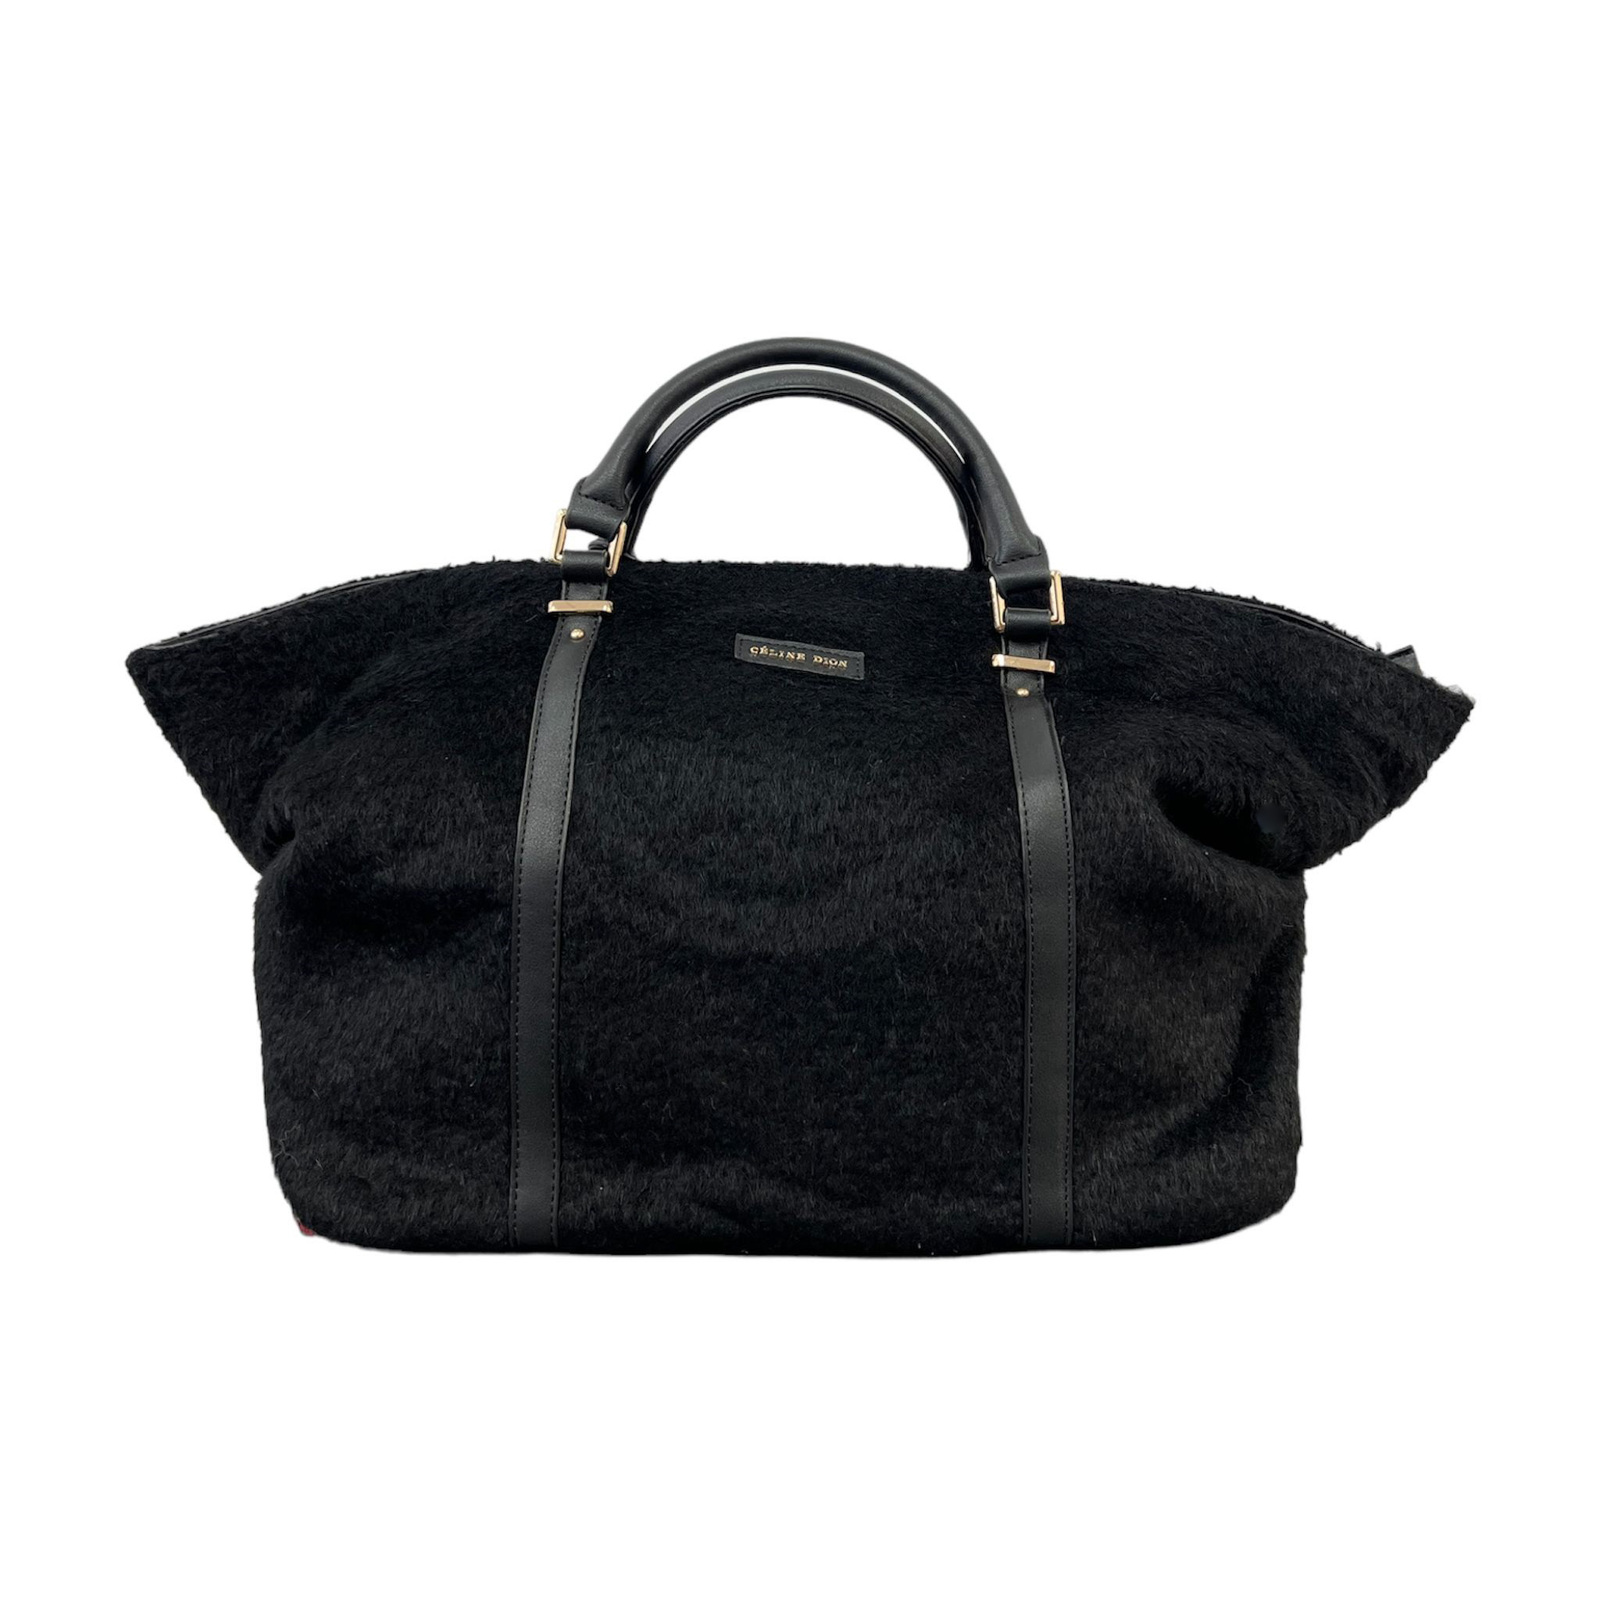 Celine Dion Tessitura Black Handbag